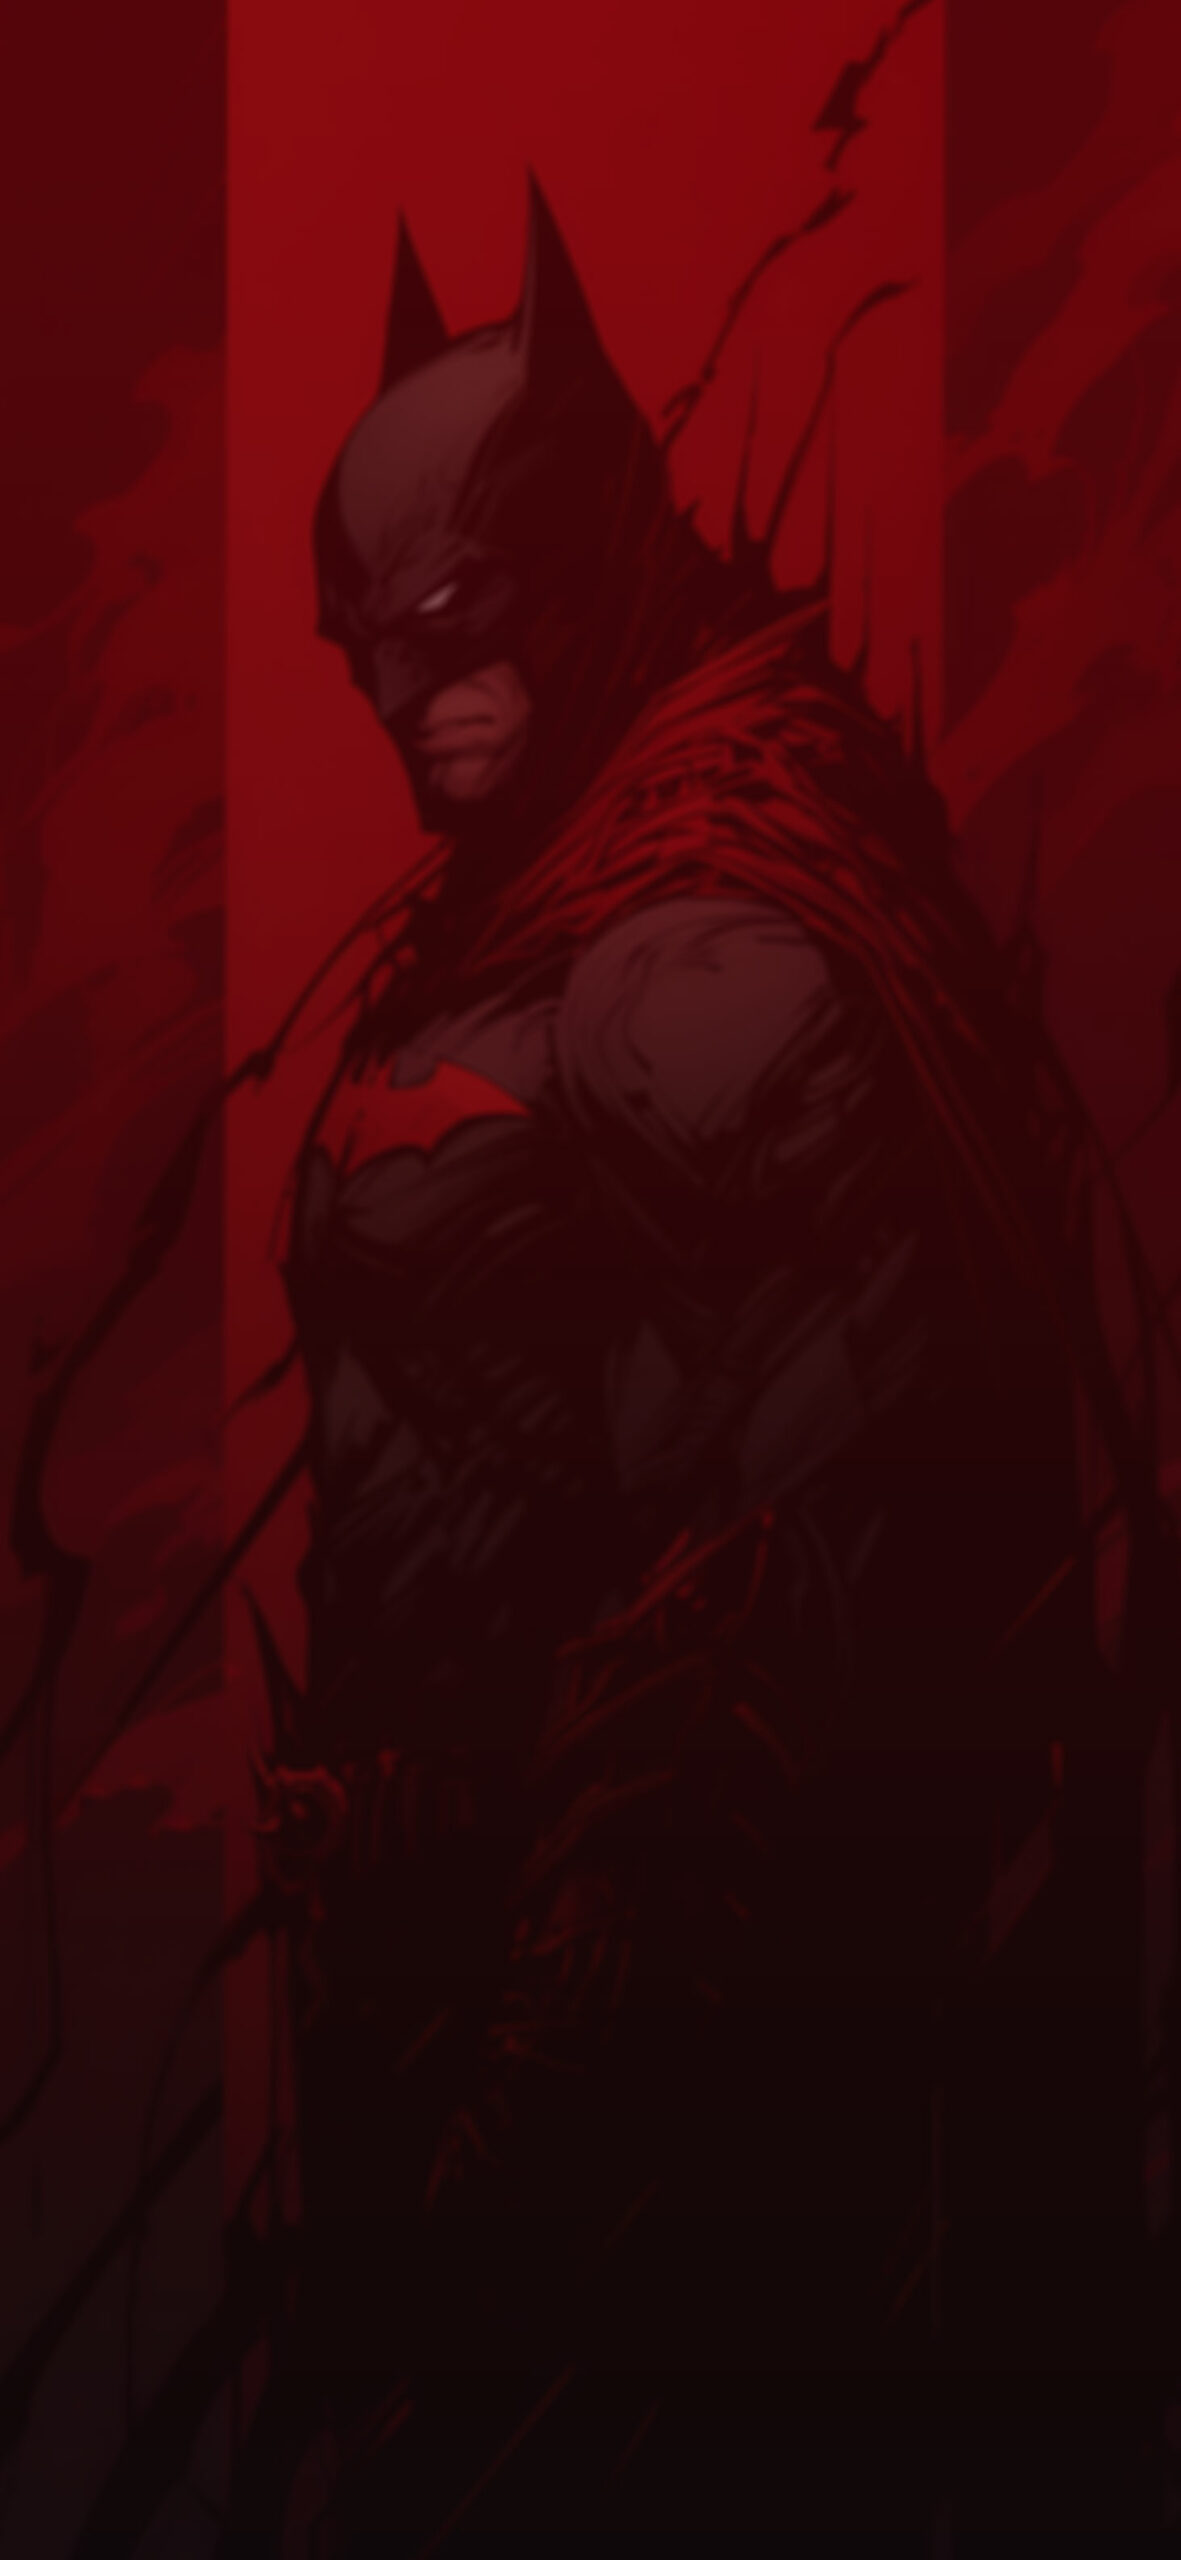 DC moody batman in red cape wallpaper DC comics art wallpaper